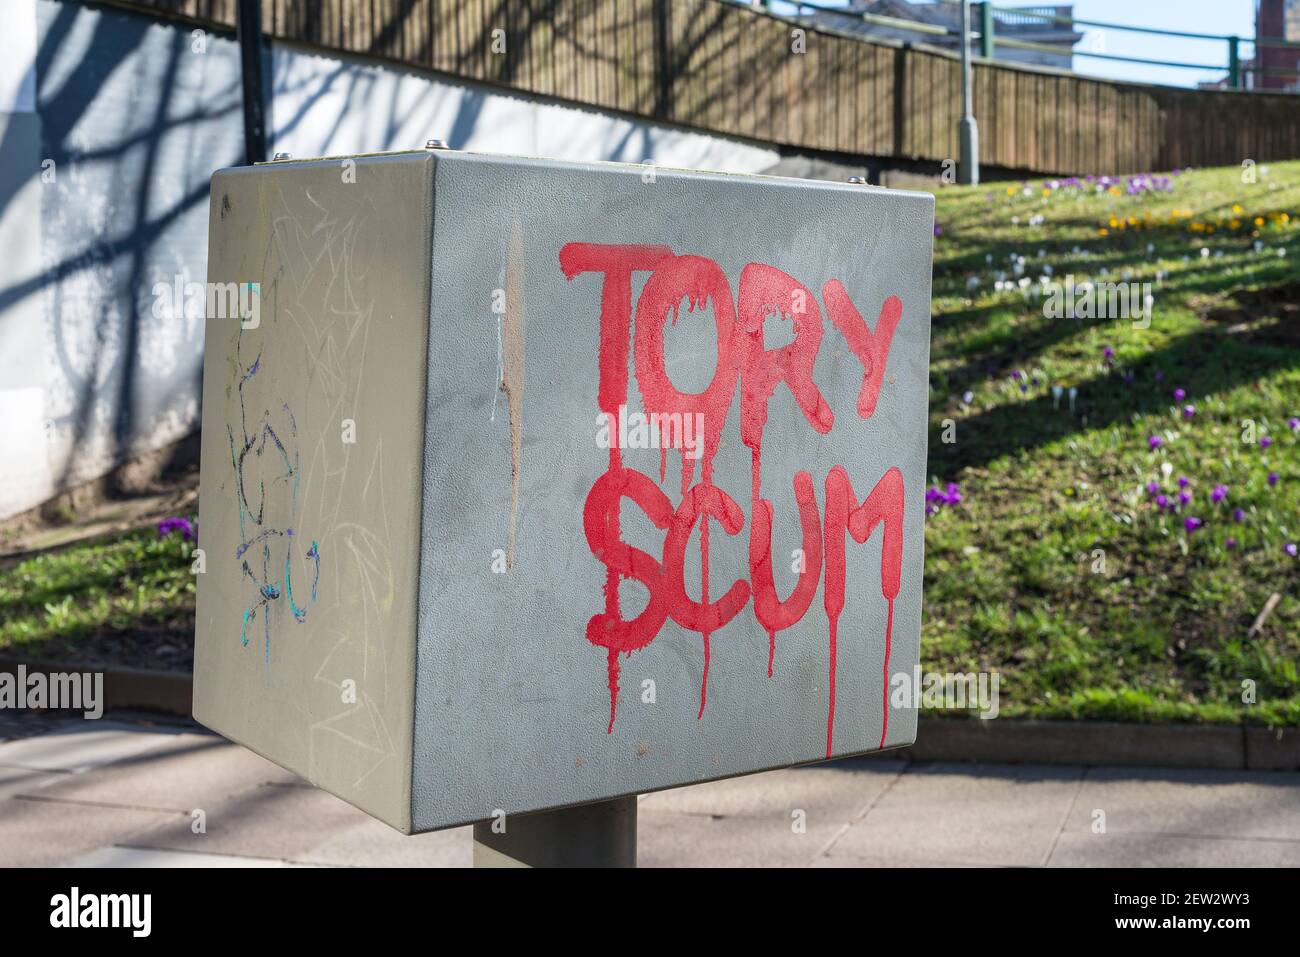 Le message du Tories Scum, parti conservateur anti-gouvernement, est peint en rouge Banque D'Images